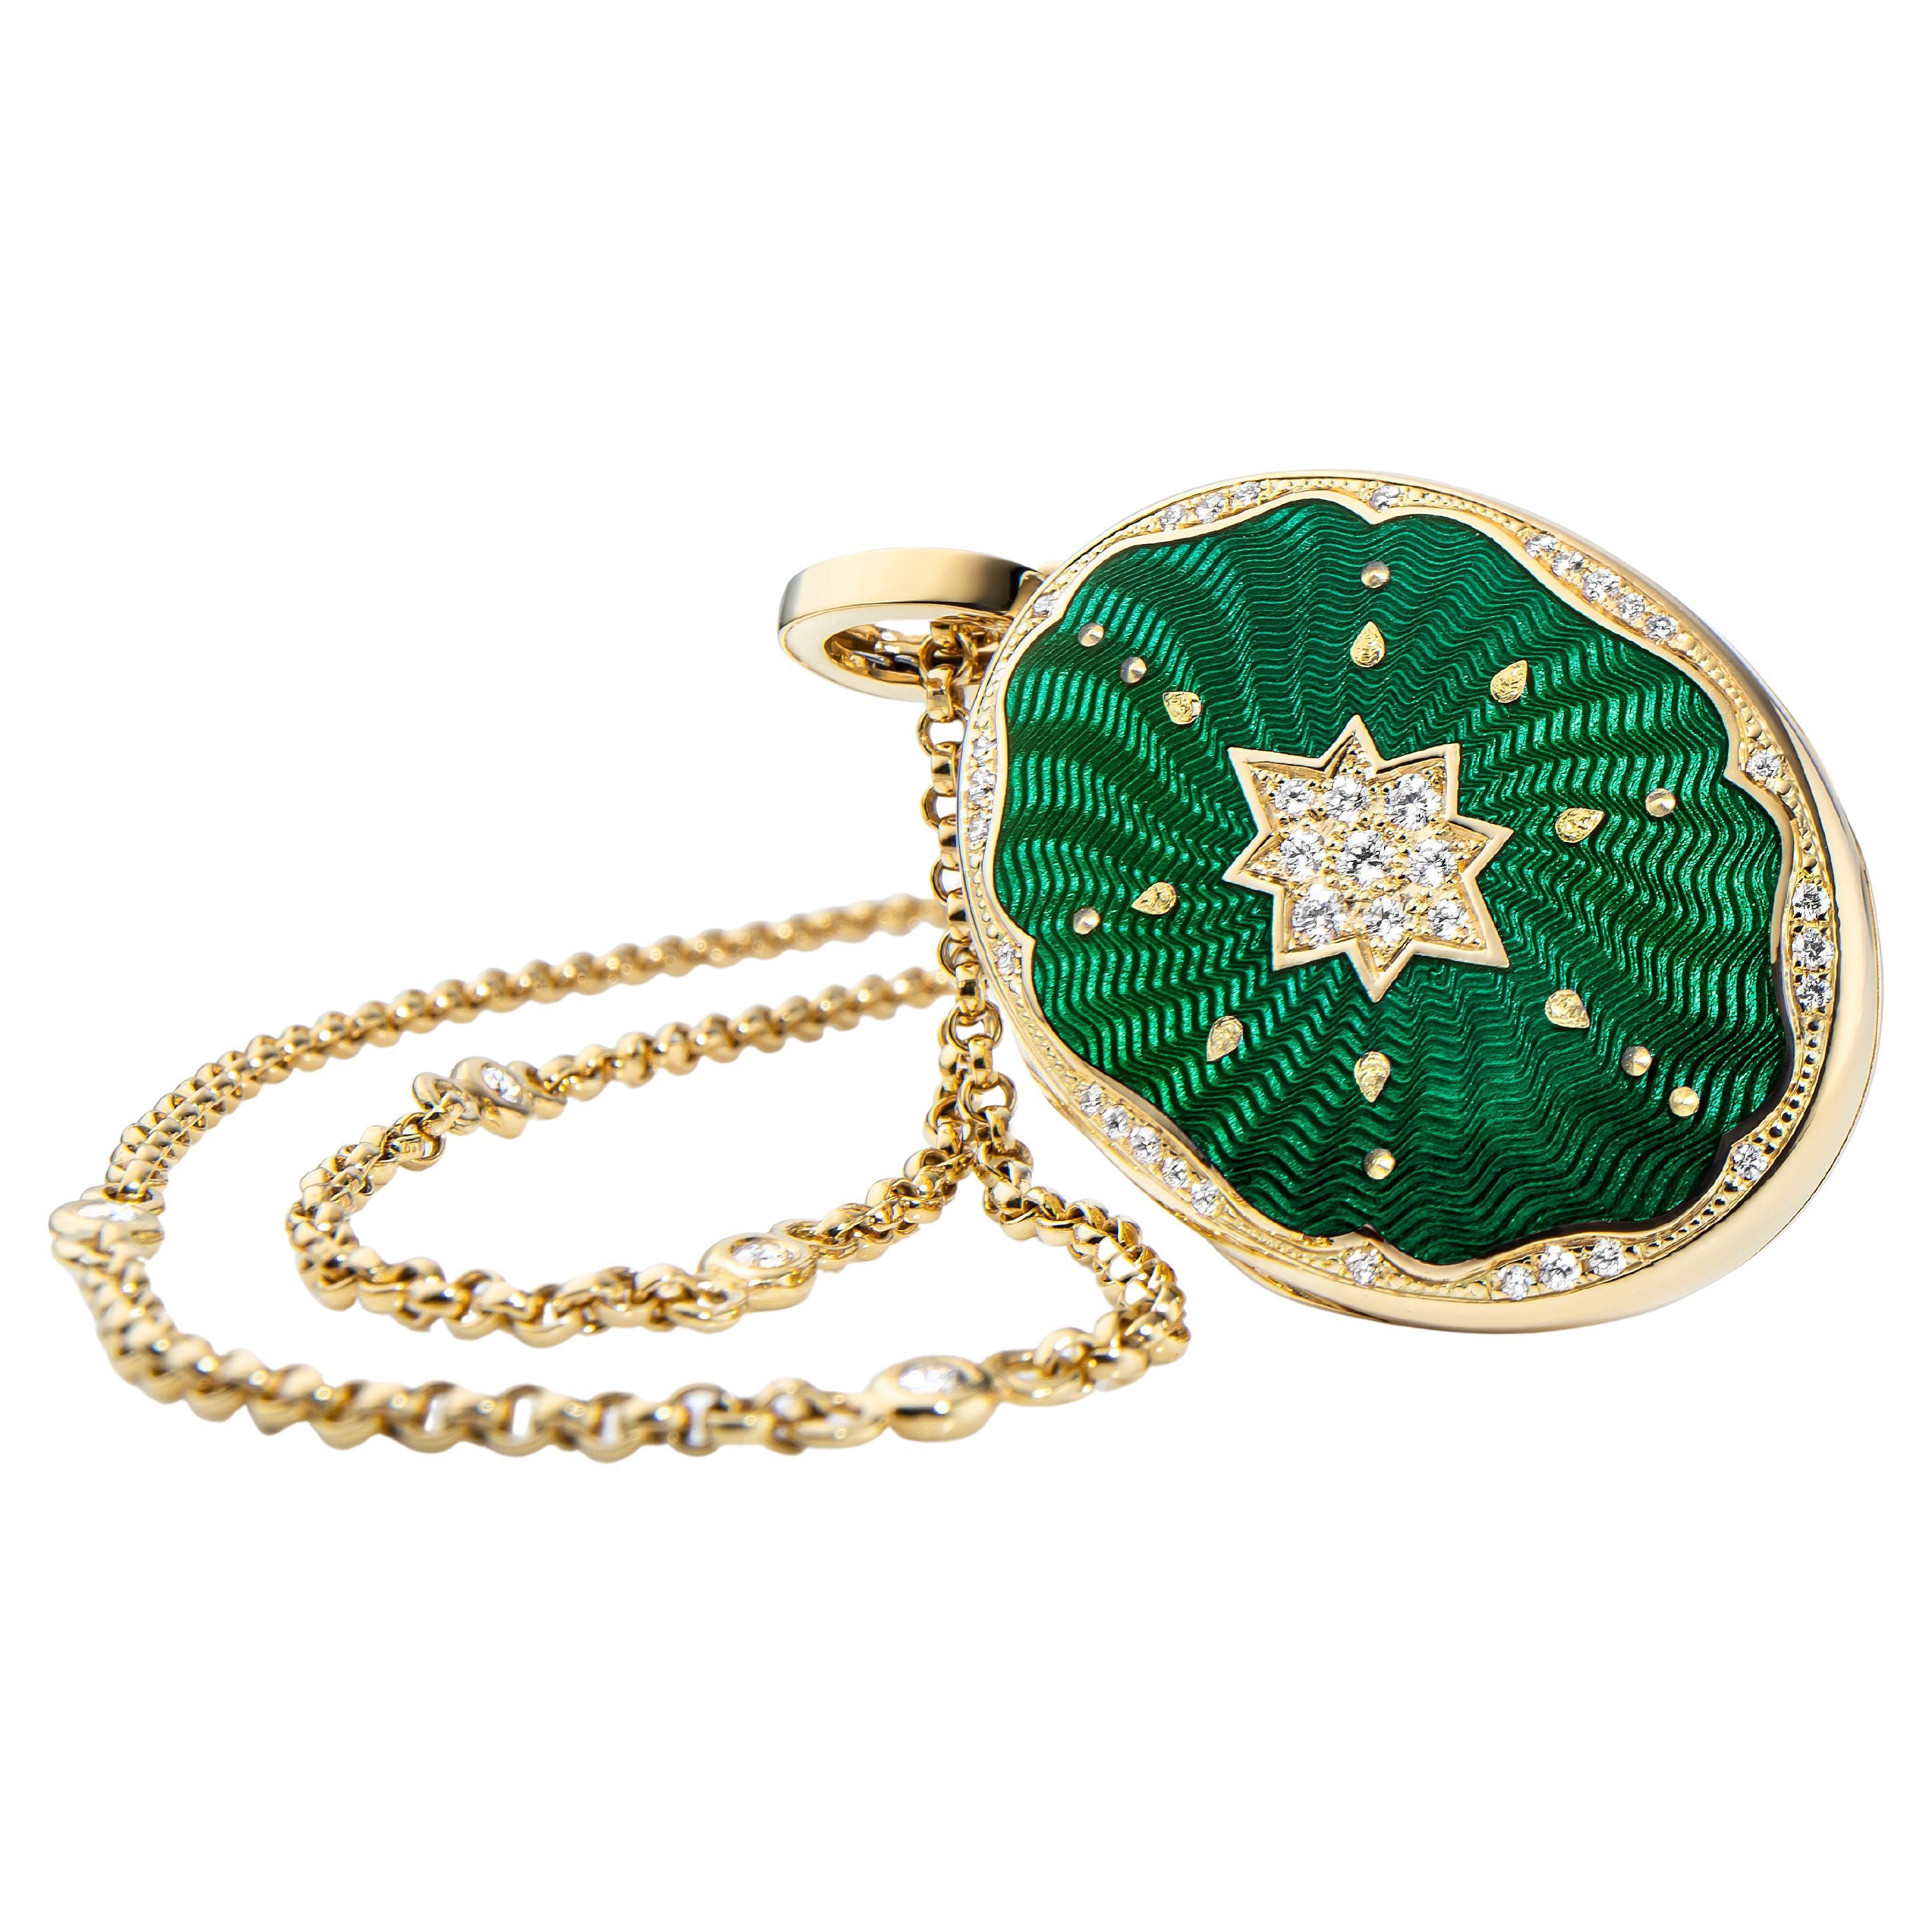 Collier pendentif médaillon ovale en or jaune 18 carats, émail vert et 37 diamants 0,29 carat